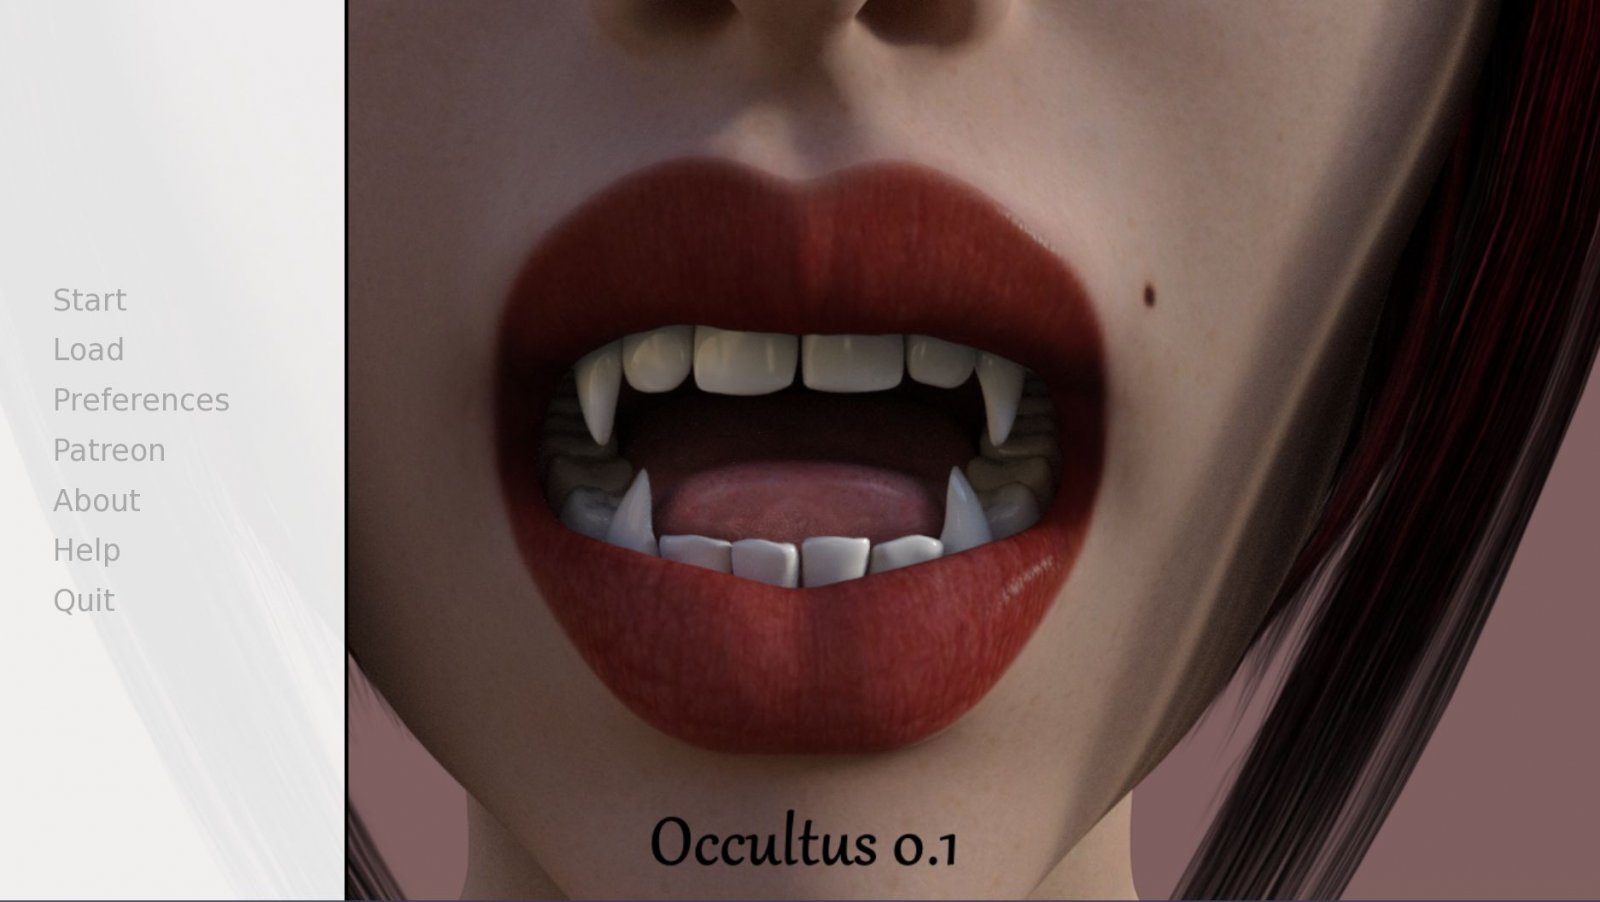 BC Occultus version 0.38